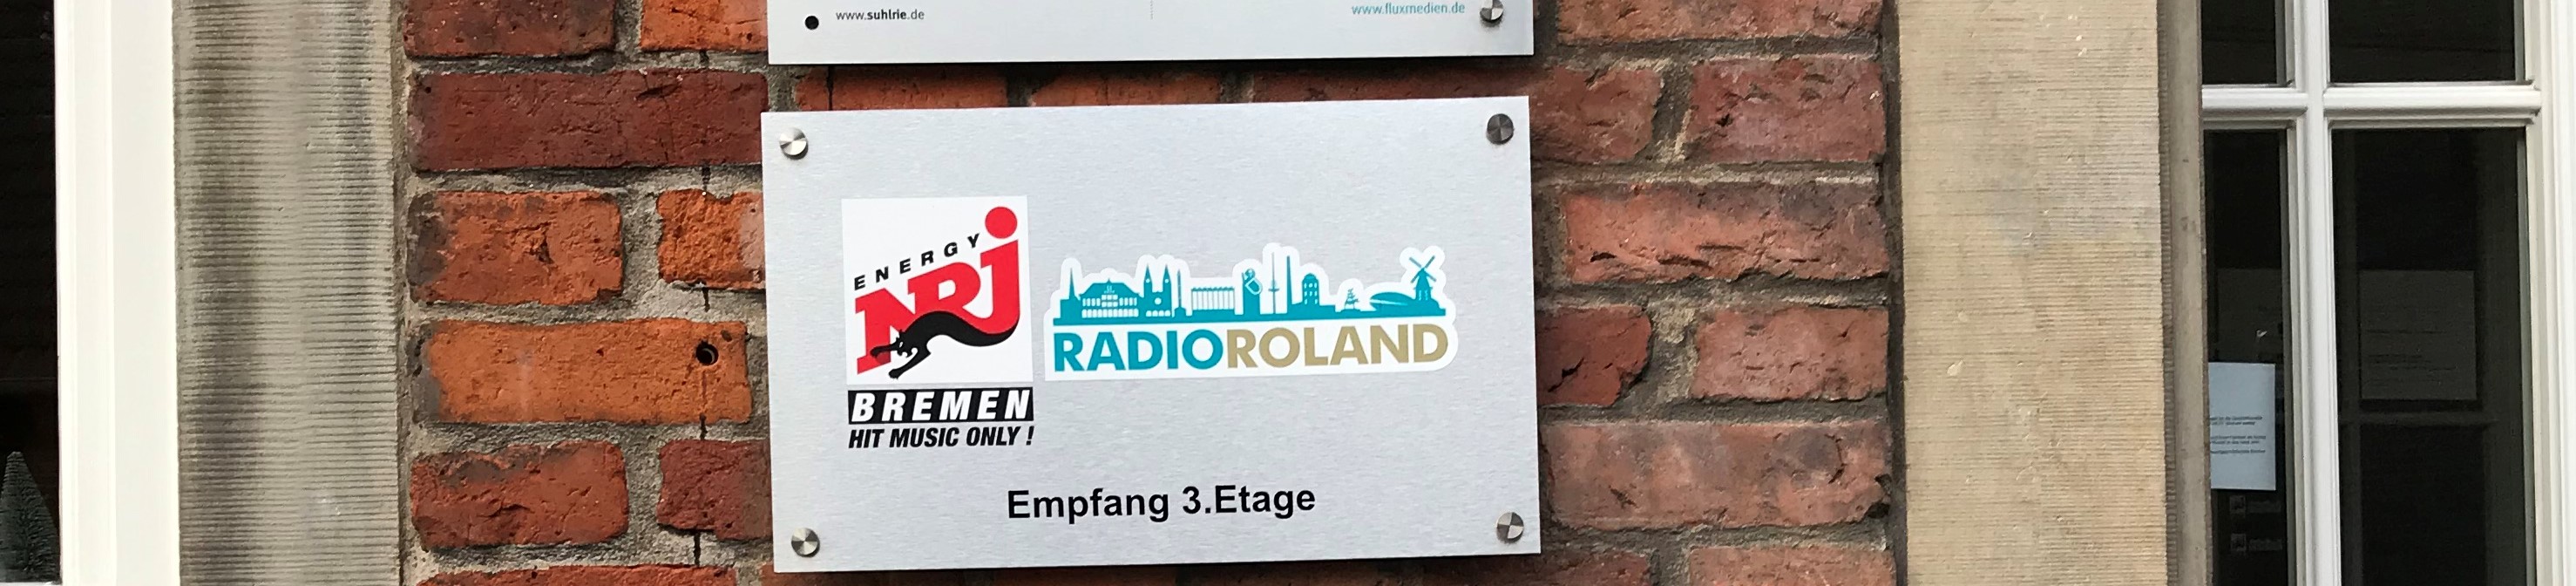 Bild 1 Radio Roland in Bremen